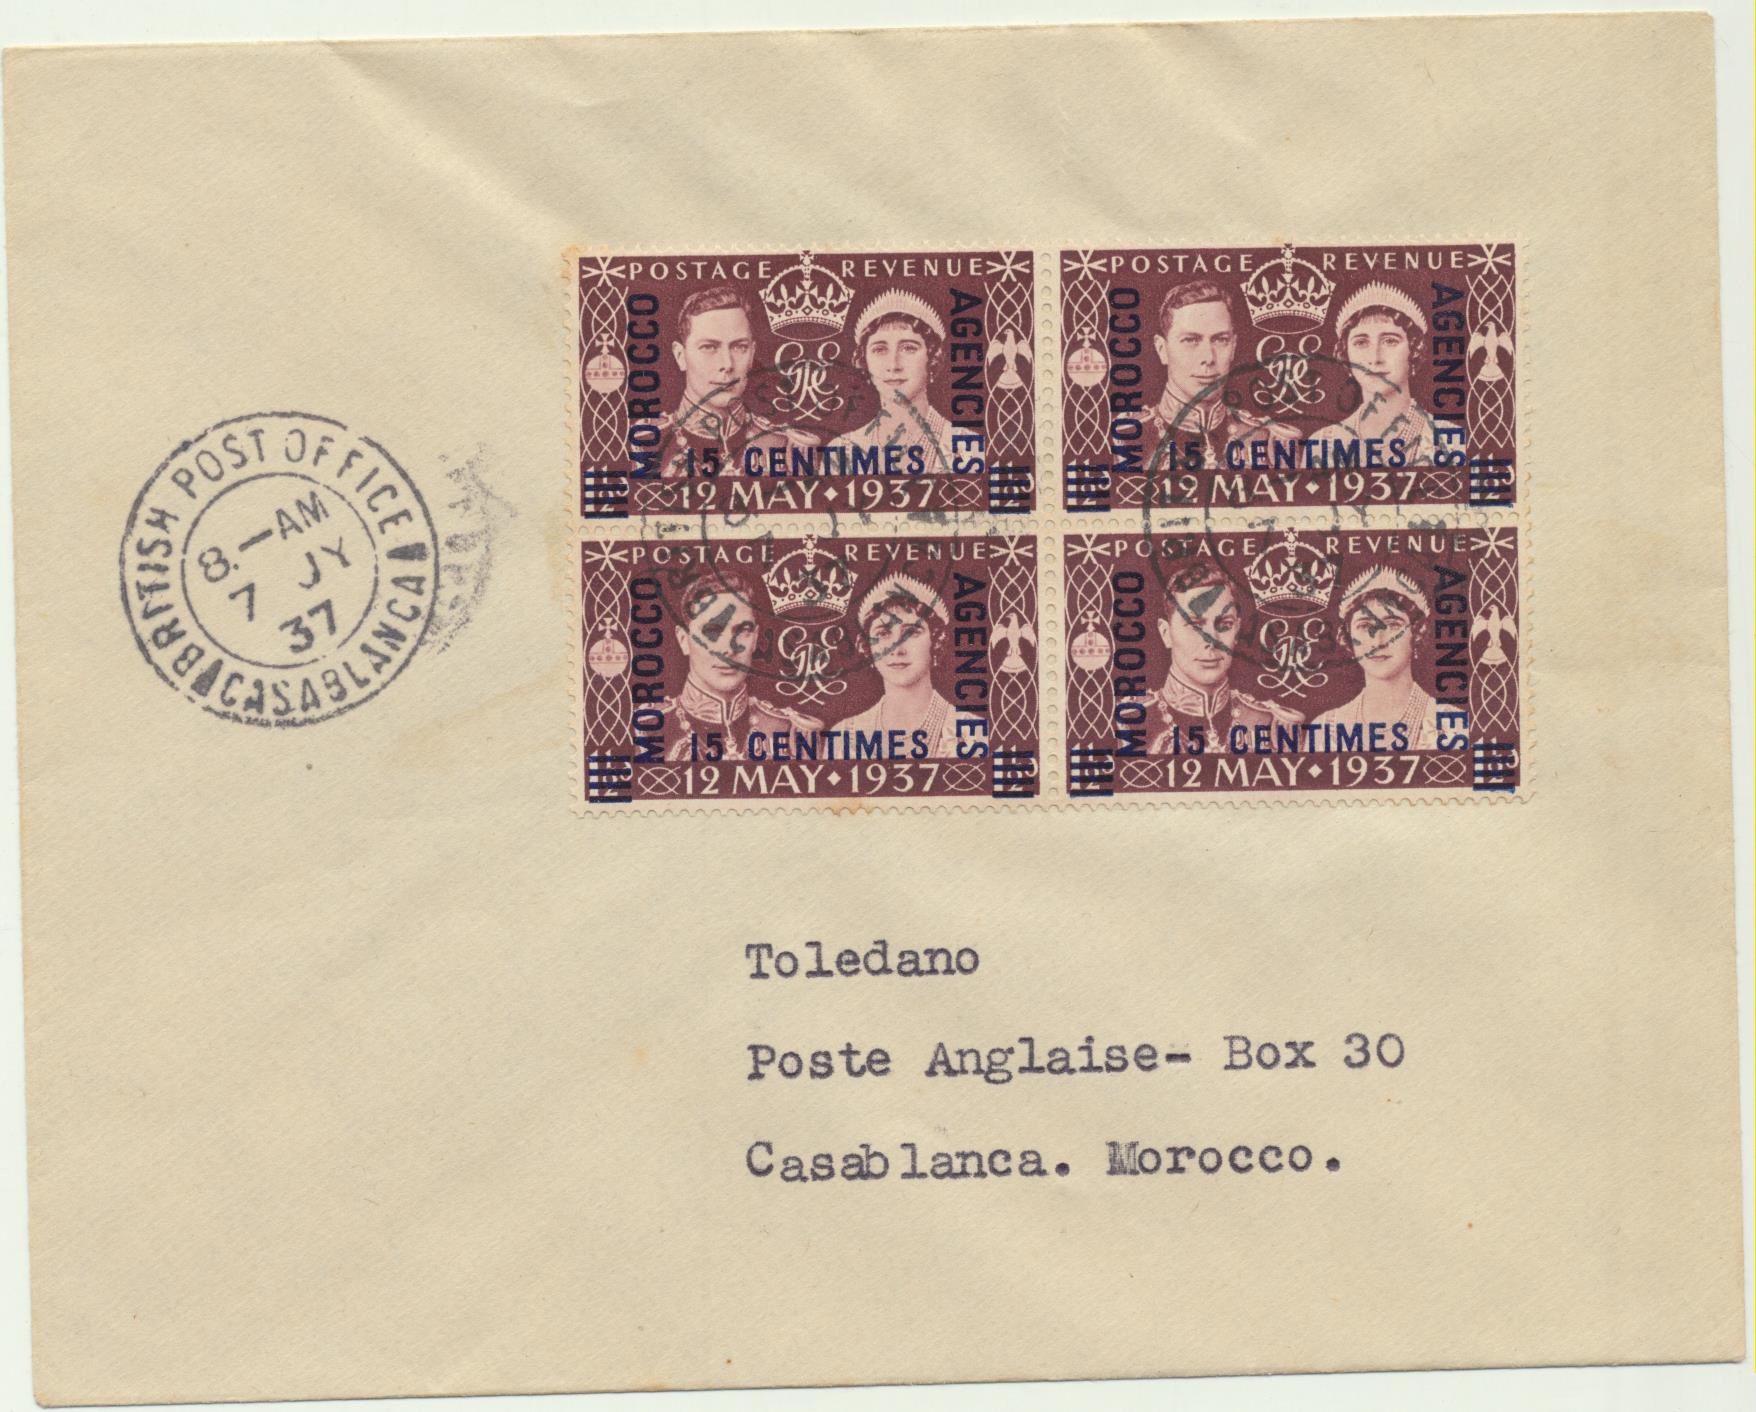 Carta a Casablanca del 7 Jy 1937. Franqueada con 4 sellos Morocco Agencies 15 Centimes y matasellos British Post Office-Casablanca